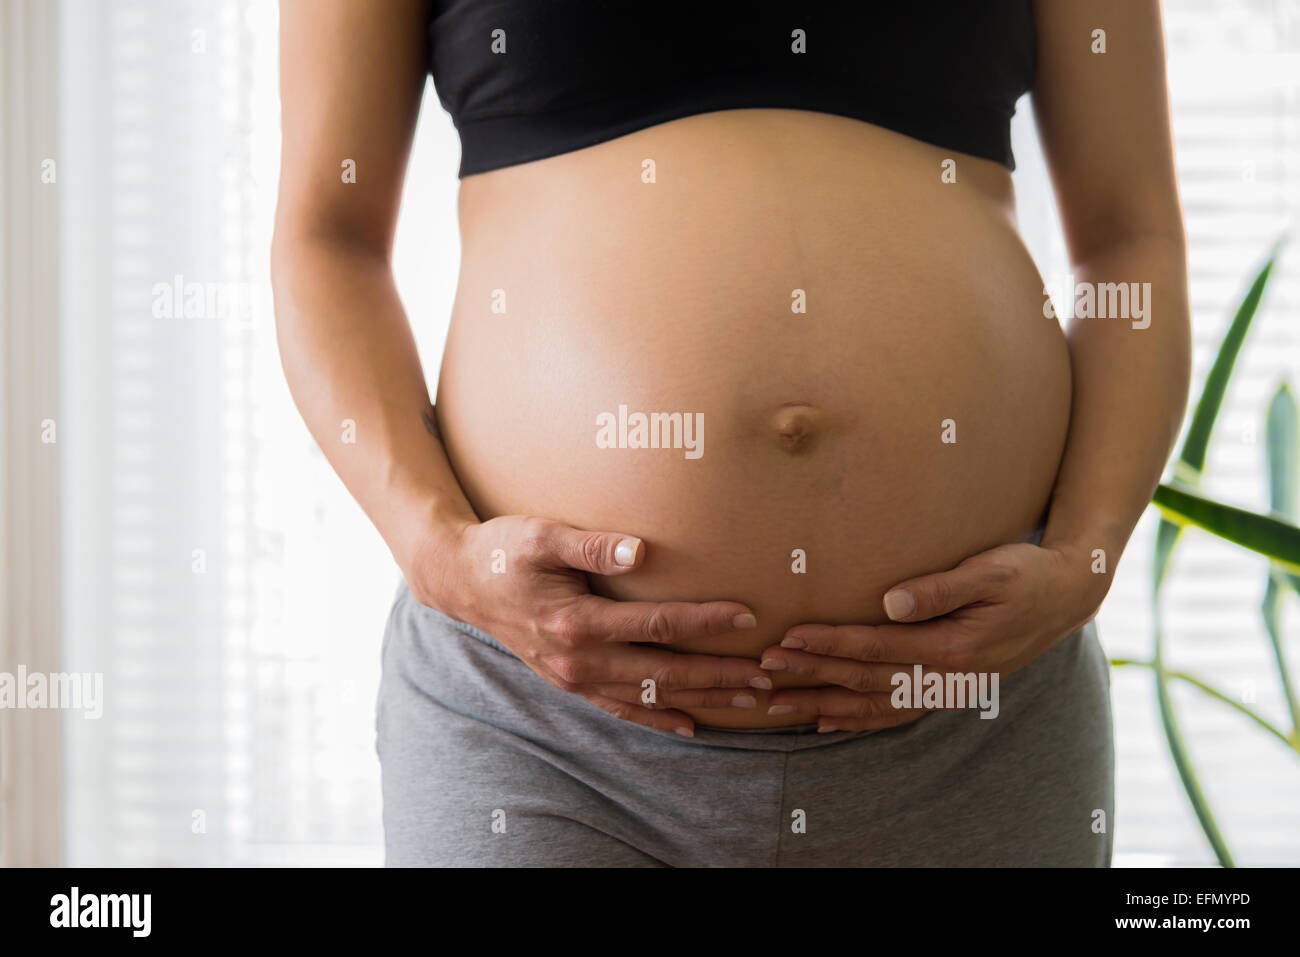 Baby bump, immagine di 8 mese donna incinta mentre tiene il suo bump Foto Stock